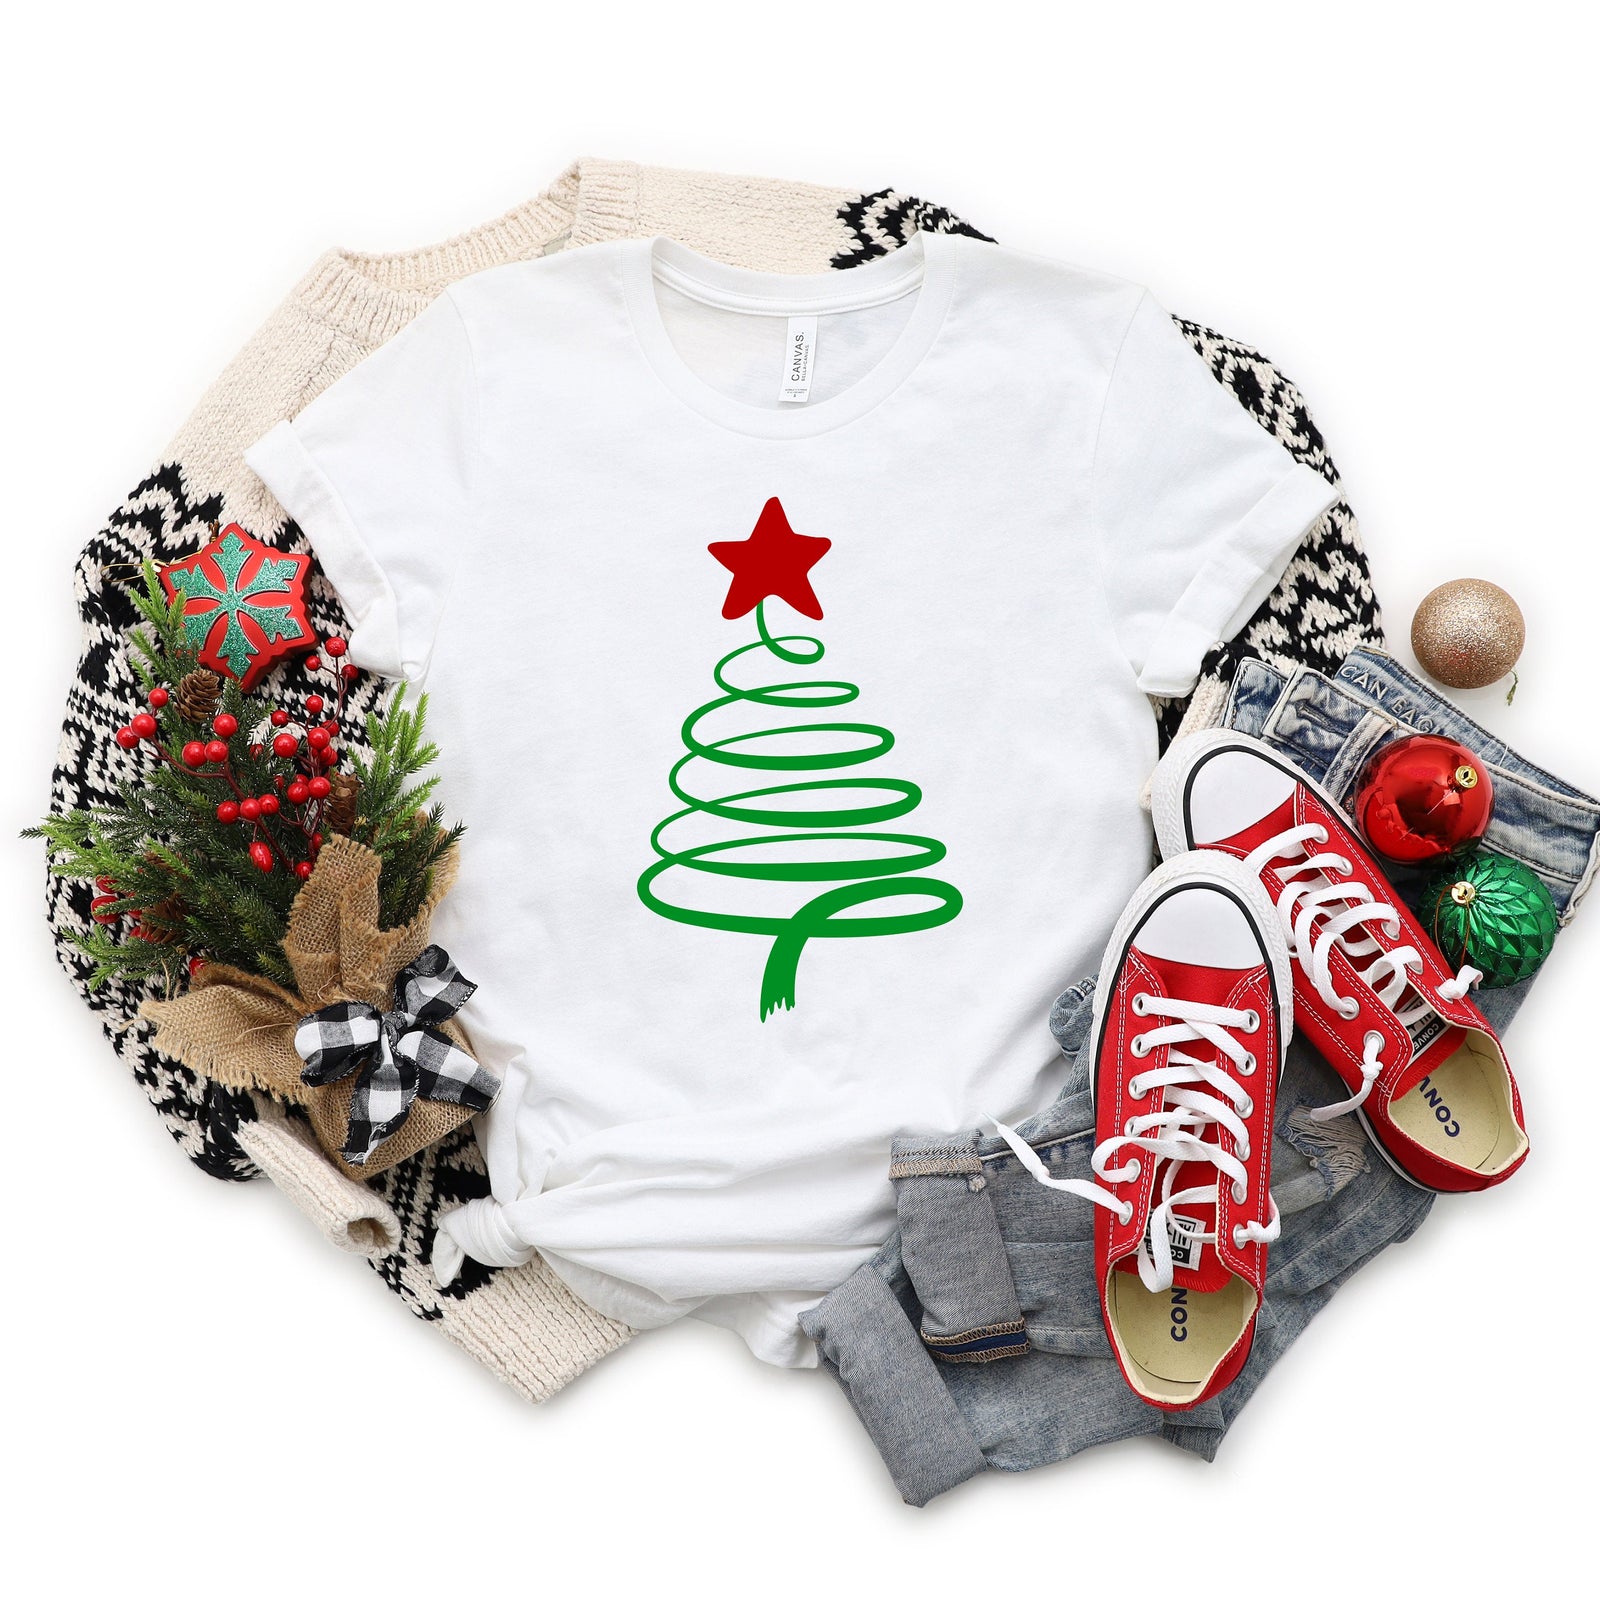 Swirly Christmas Tree Shirt - X-Mas T Shirt - Cute Christmas Holiday Shirt